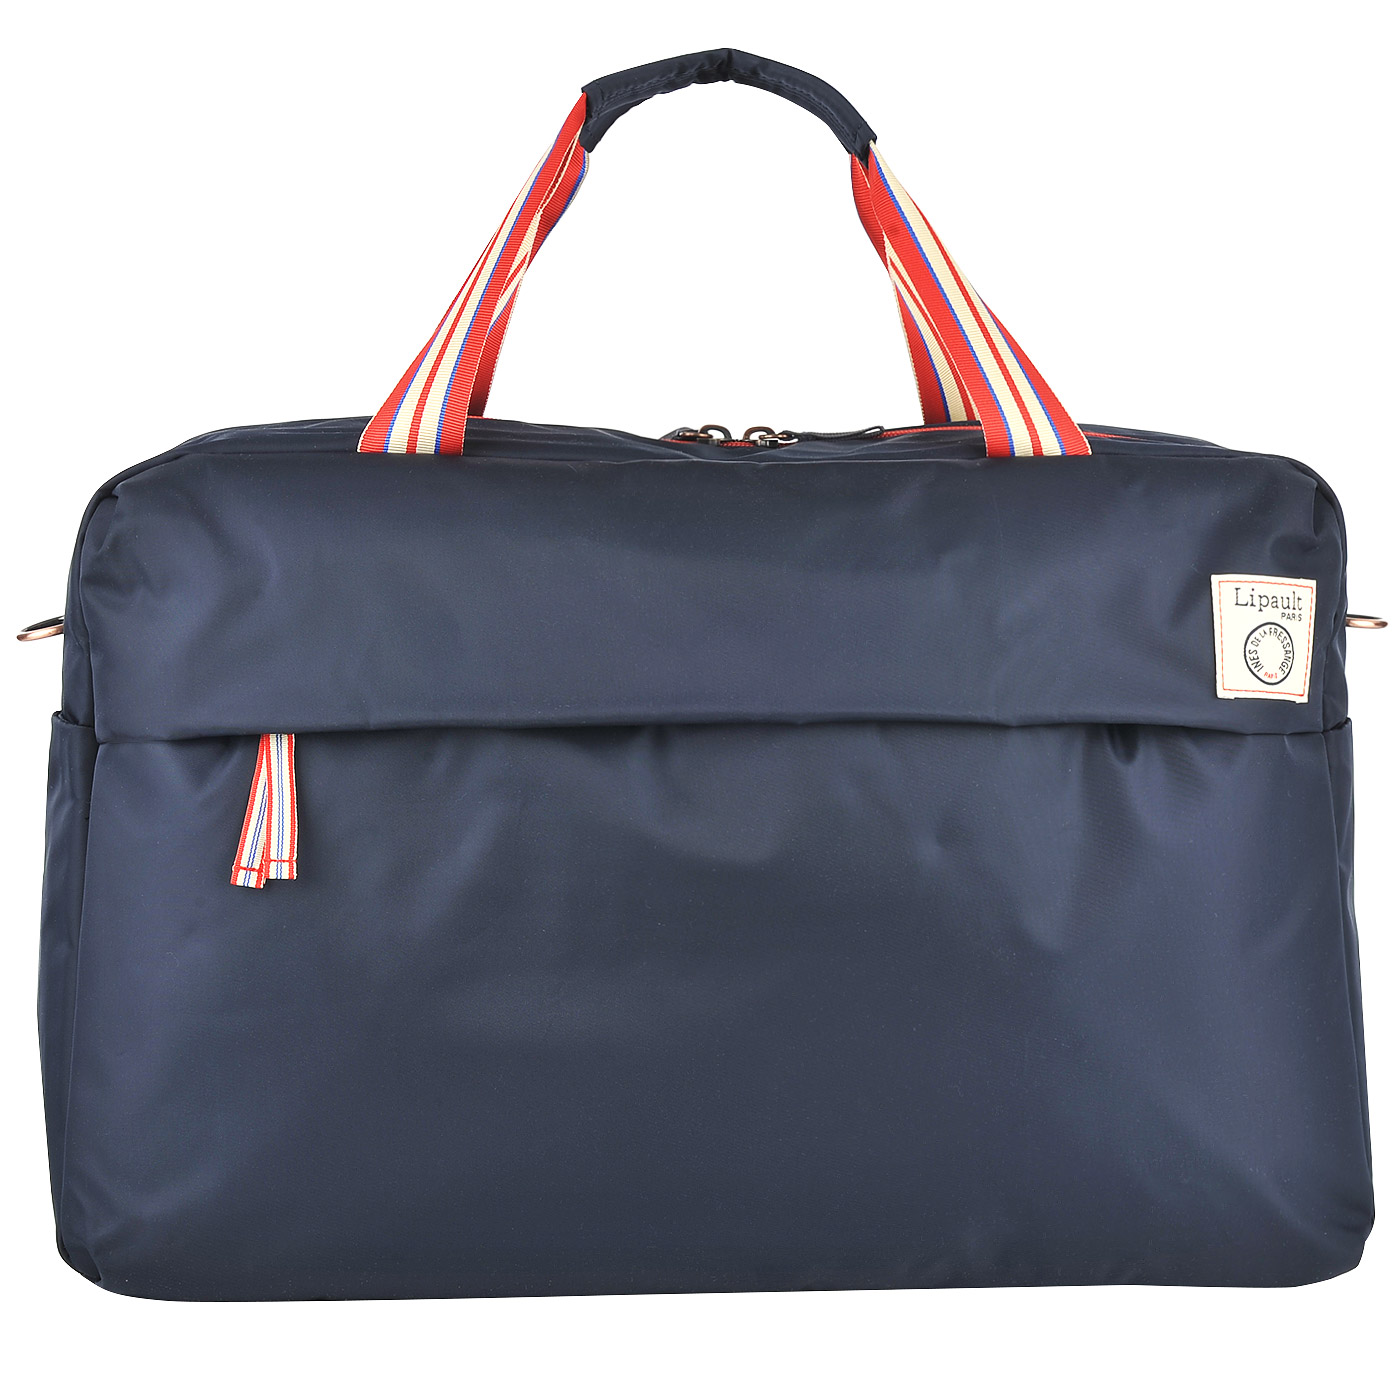 Lipault Текстильная дорожная сумка синего цвета